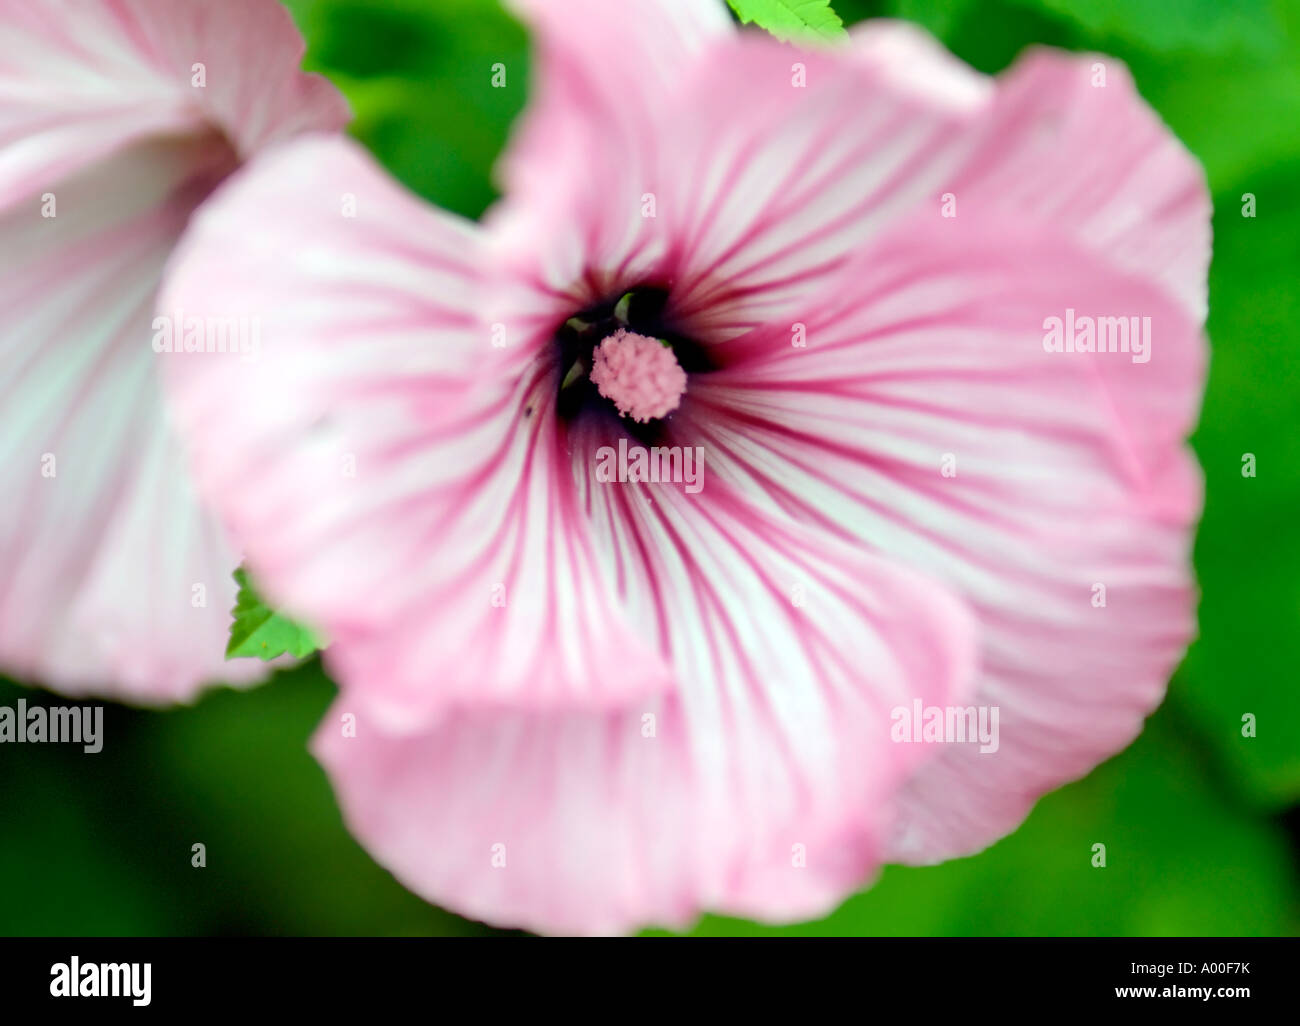 A Close Up Landscape Photograph of a Lavatera Trimestris Flower Stock Photo